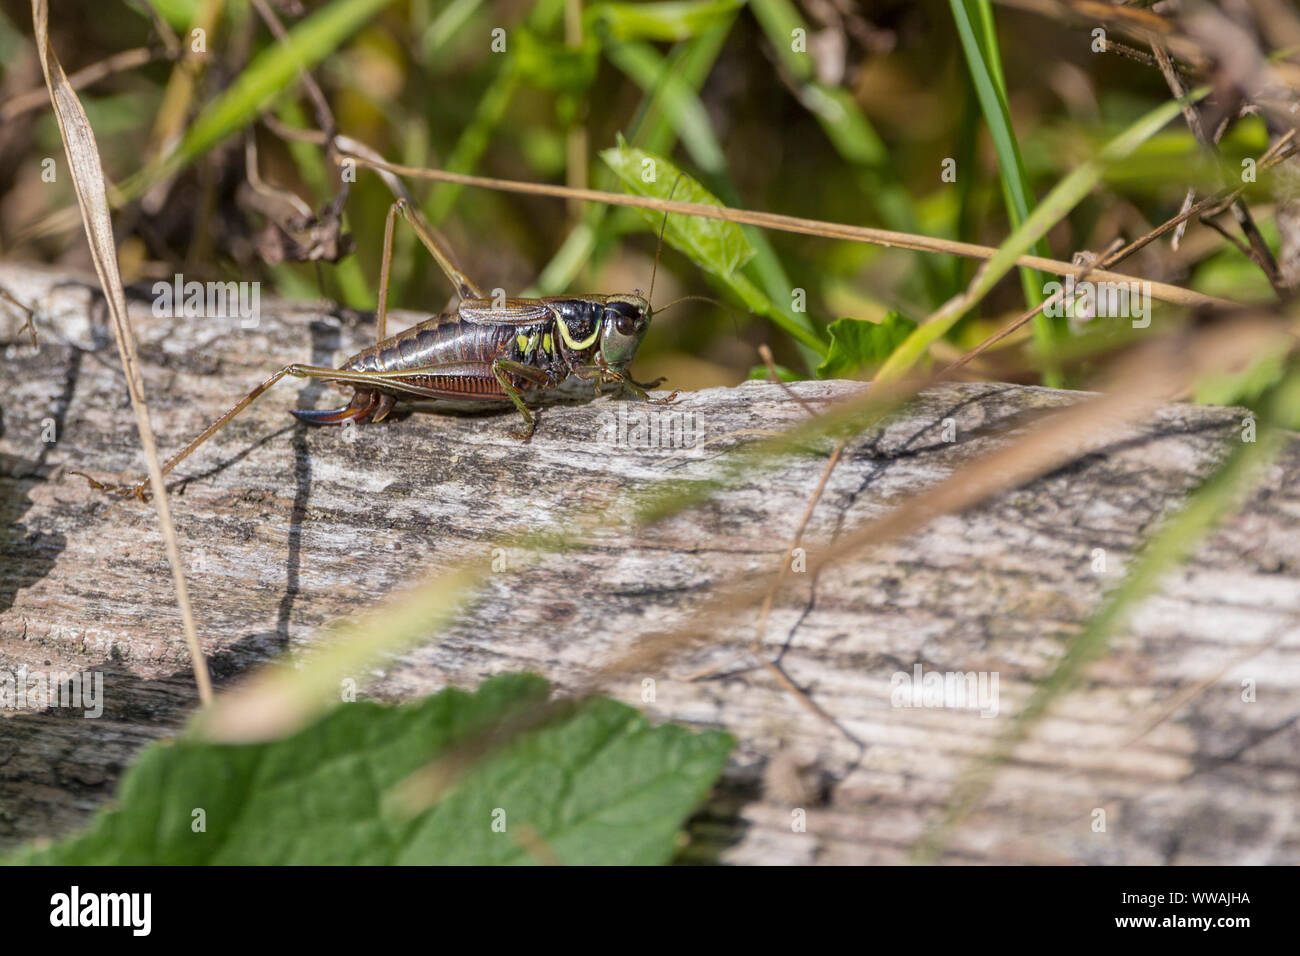 Roesel's Bush Cricket (Metrioptera roeselii) marmoriertem braunen Körper blass Marge für die gesamte Halsschild Seite-Klappe. Weibchen hat ovipositor gezeigt Grau grün Kopf. Stockfoto